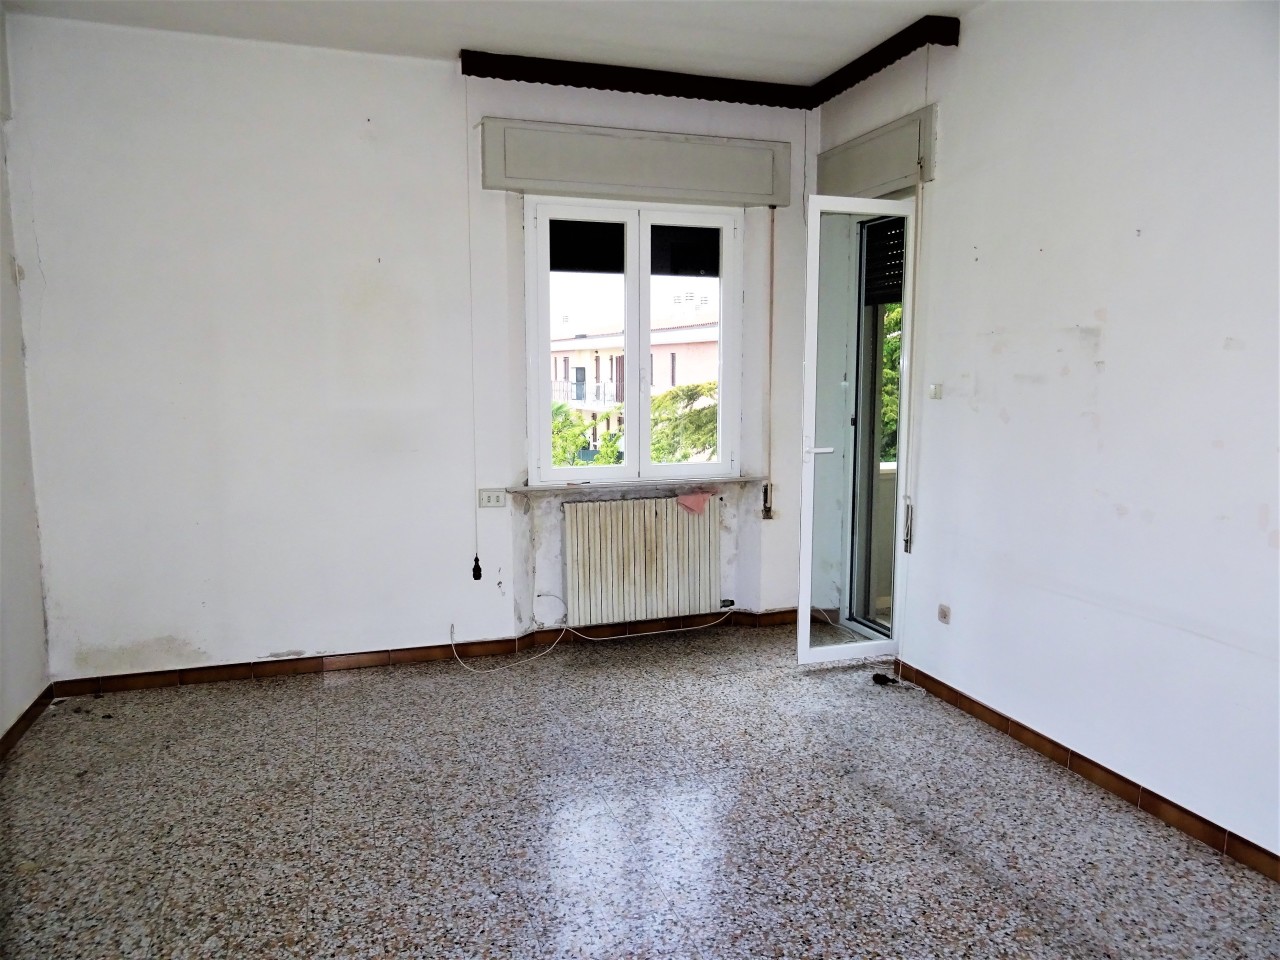 Appartamento in vendita a Morro d'Alba, 4 locali, prezzo € 55.000 | PortaleAgenzieImmobiliari.it